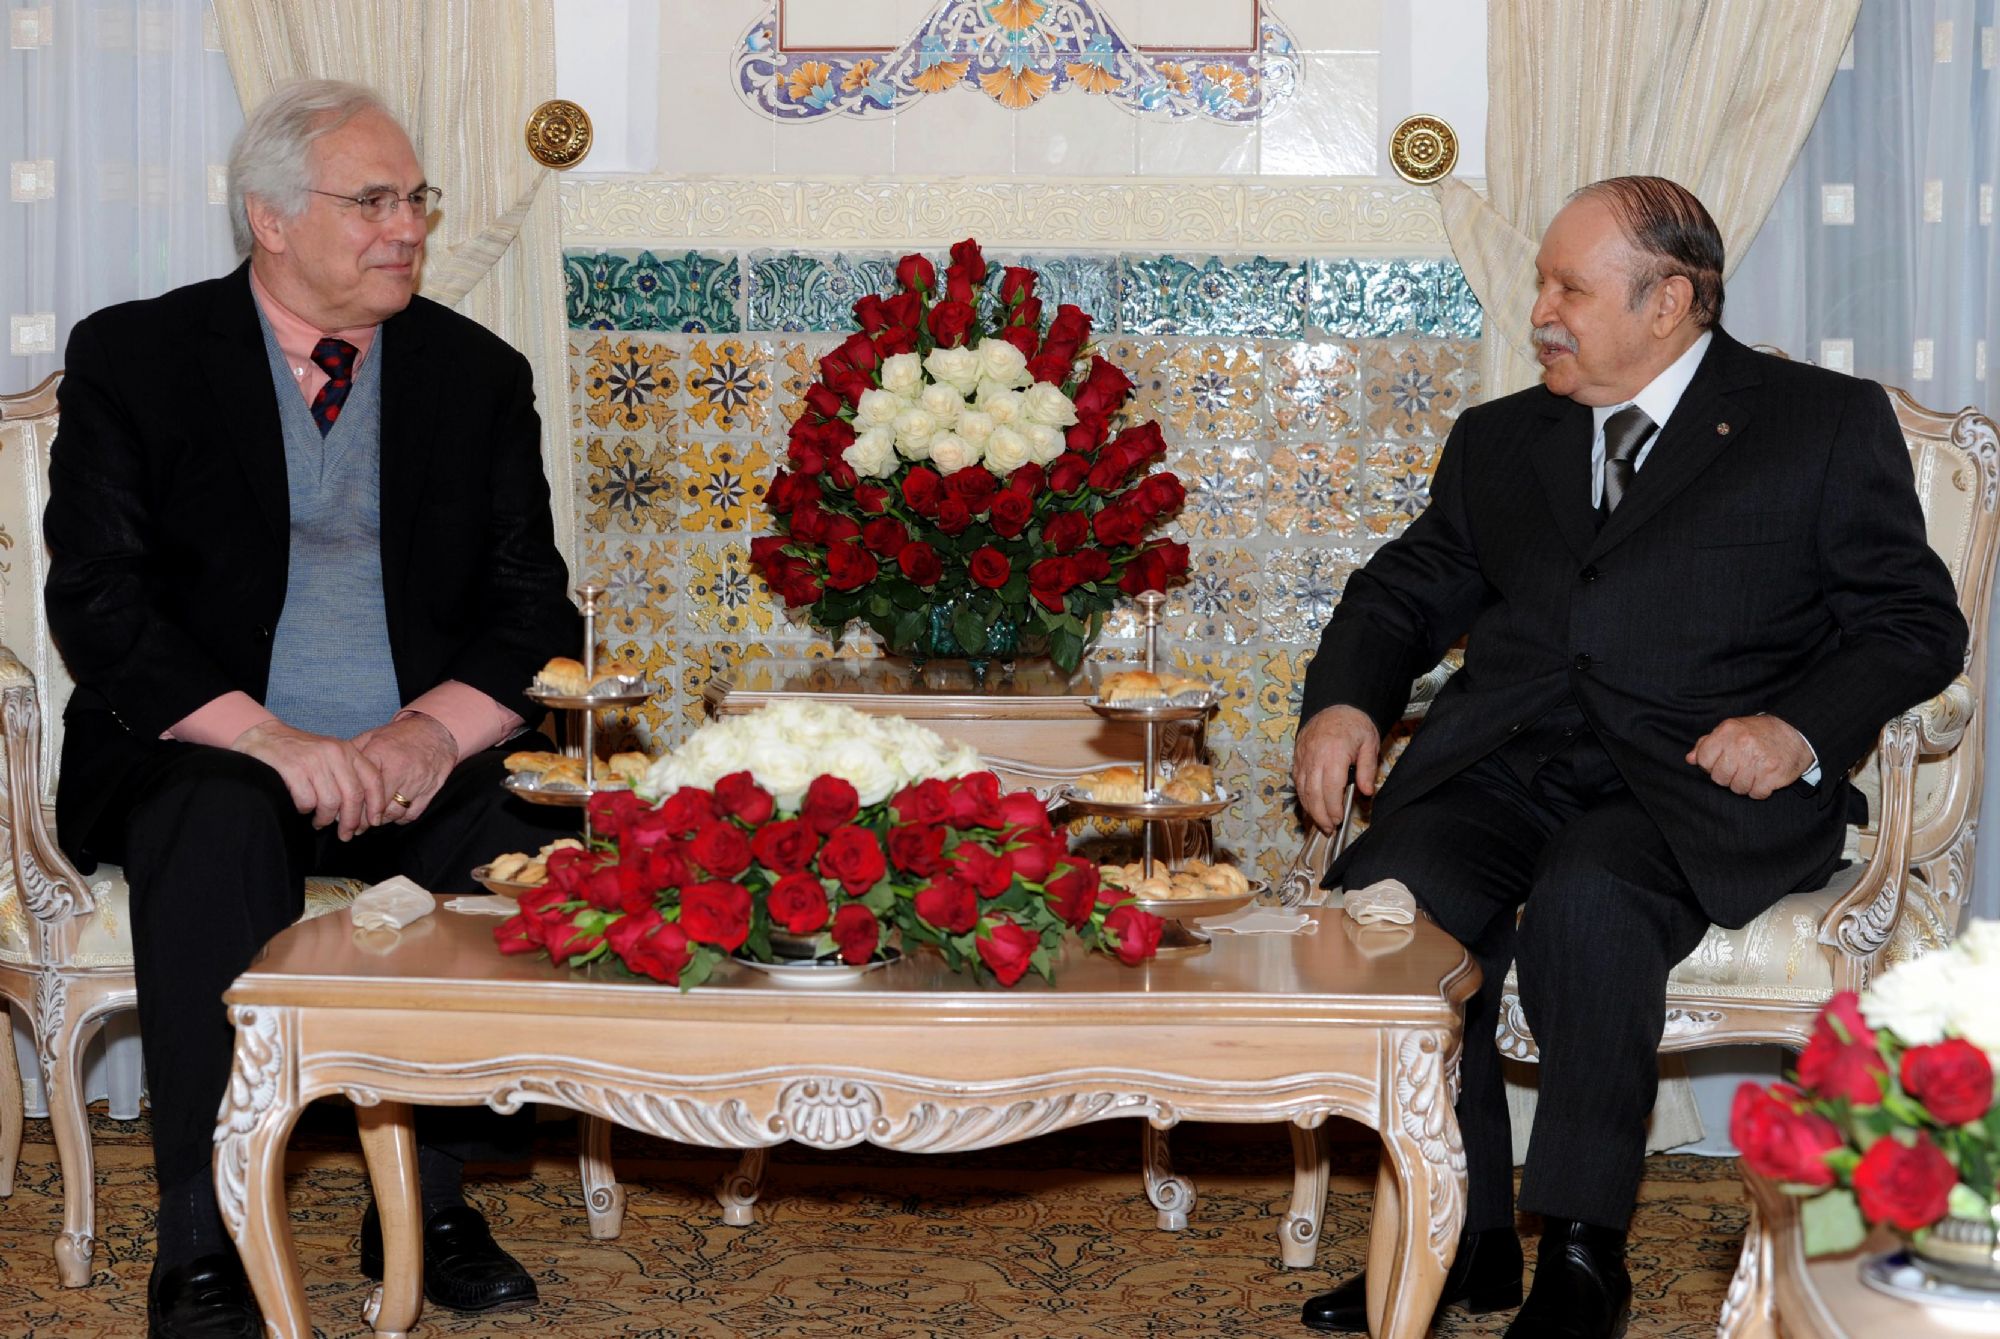 الرئيس الجزائري عبدالعزيز بوتفليقة في لقاء سابق مع المبعوث الأممي السابق للصحراء المغربية كرستوفر روس